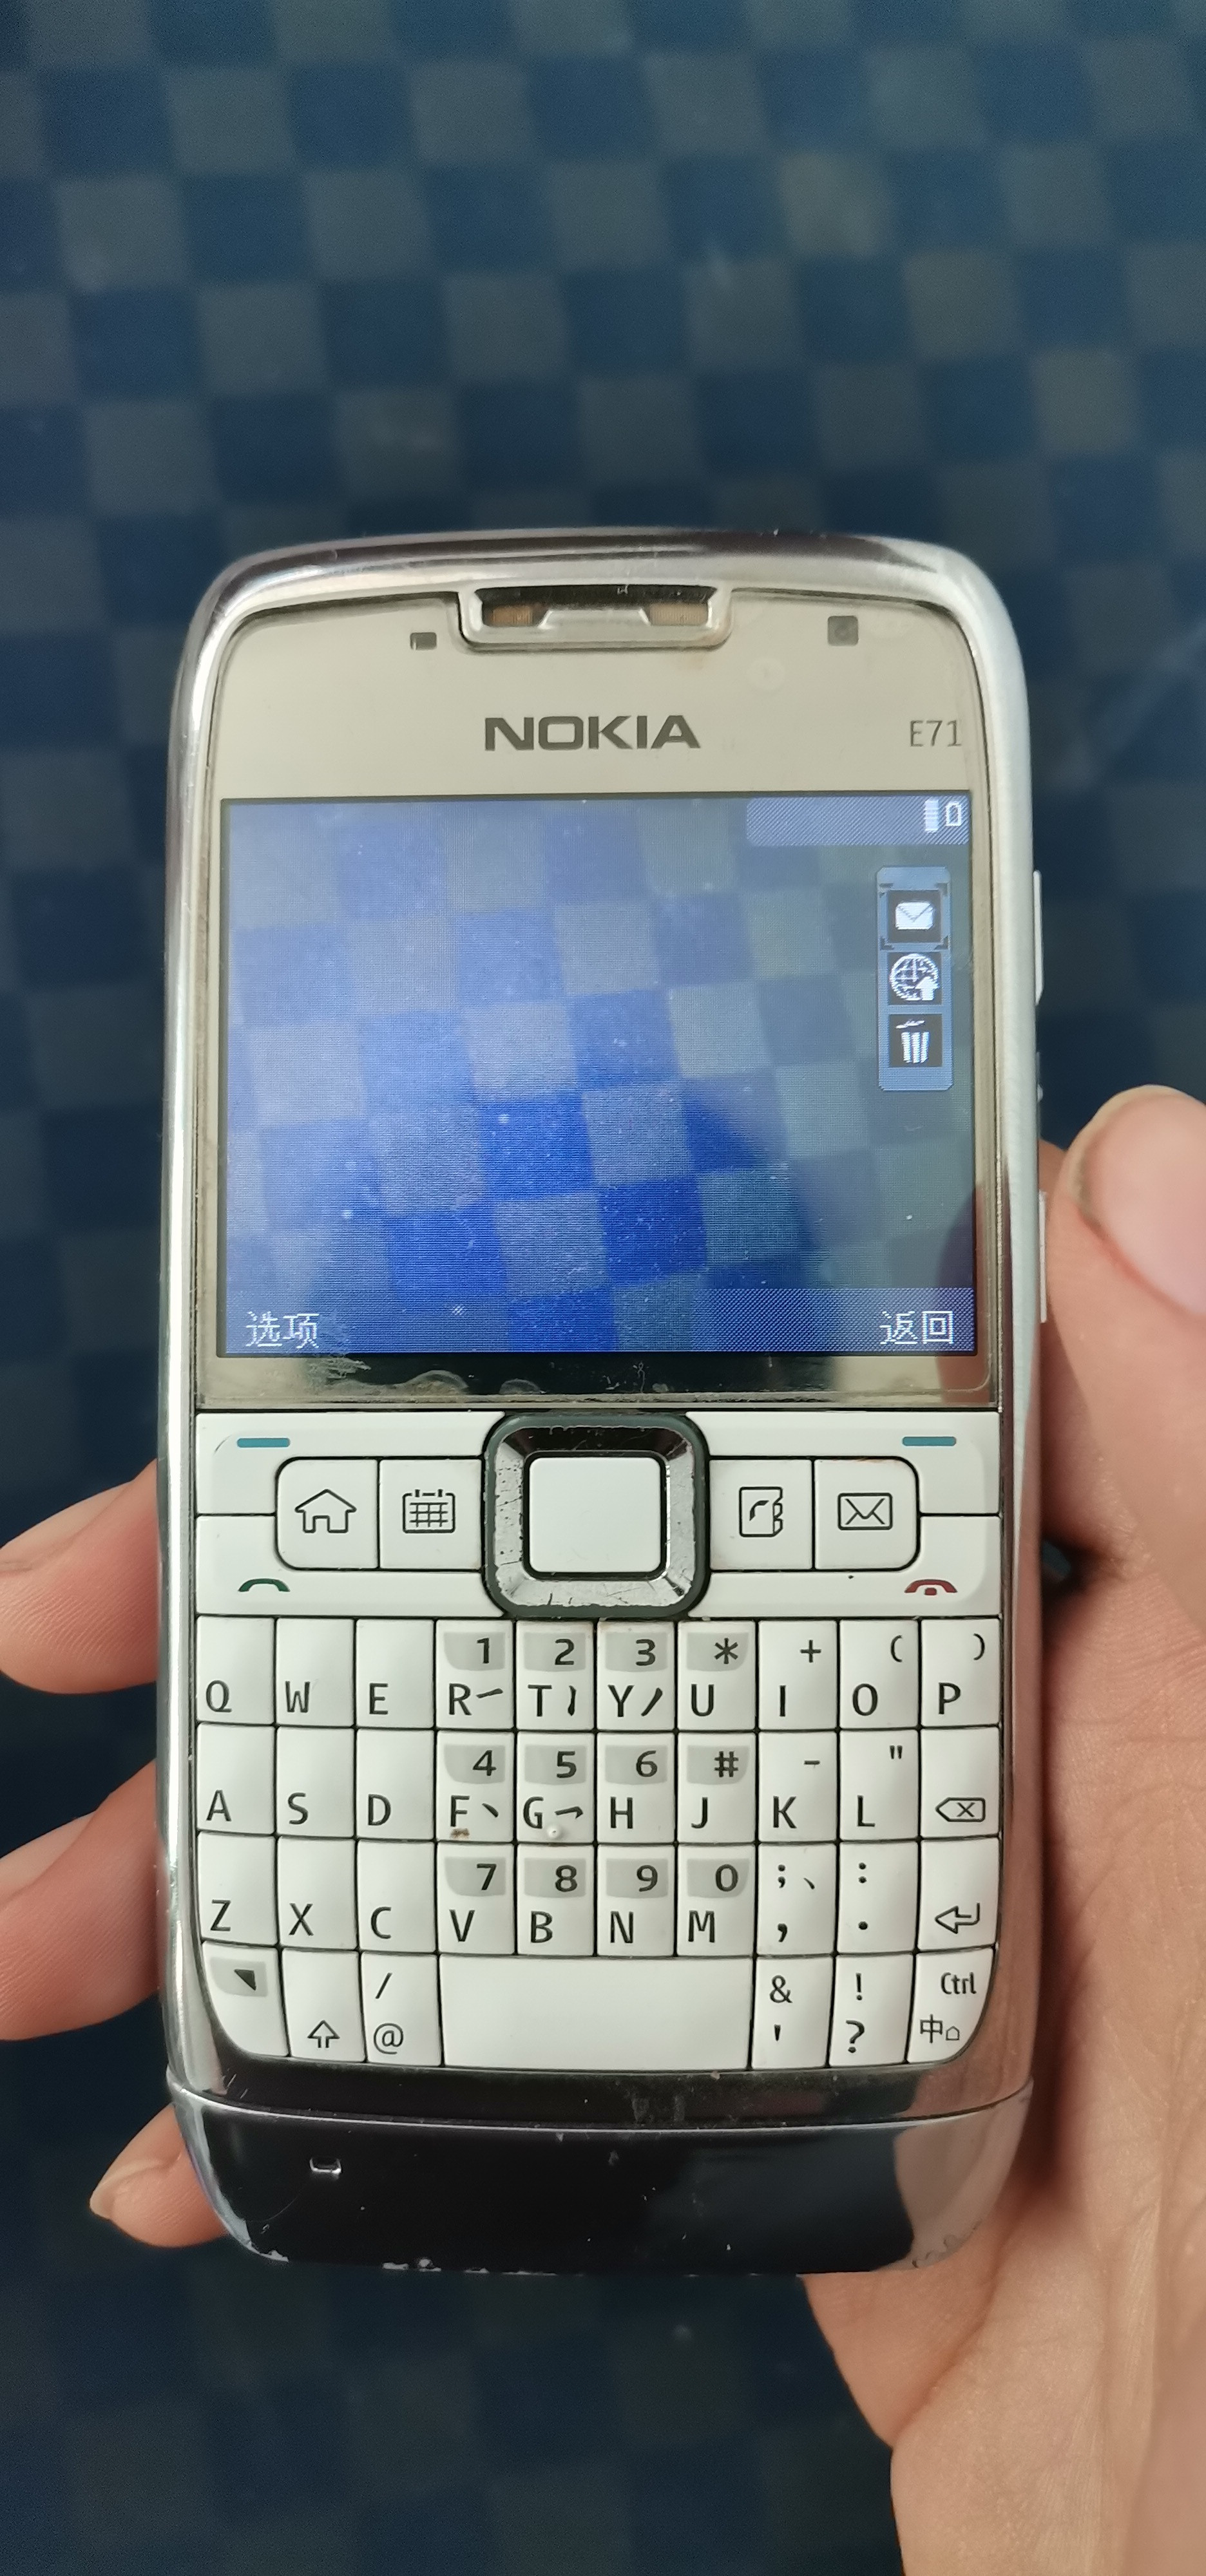 Nokia Lumia 710 – Wikipedia, wolna encyklopedia